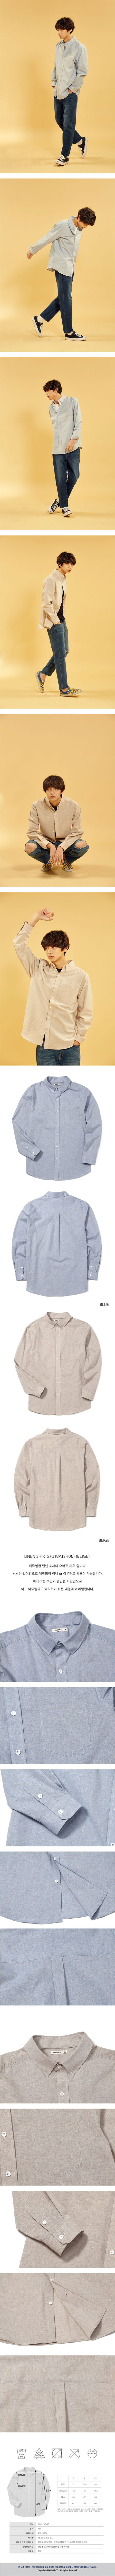 Linen Shirts (U18ATSH06) 남녀공용 셔츠 57,000원 - 언리미트 패션의류, 스트릿패션, 긴팔셔츠, 베이직셔츠 바보사랑 Linen Shirts (U18ATSH06) 남녀공용 셔츠 57,000원 - 언리미트 패션의류, 스트릿패션, 긴팔셔츠, 베이직셔츠 바보사랑